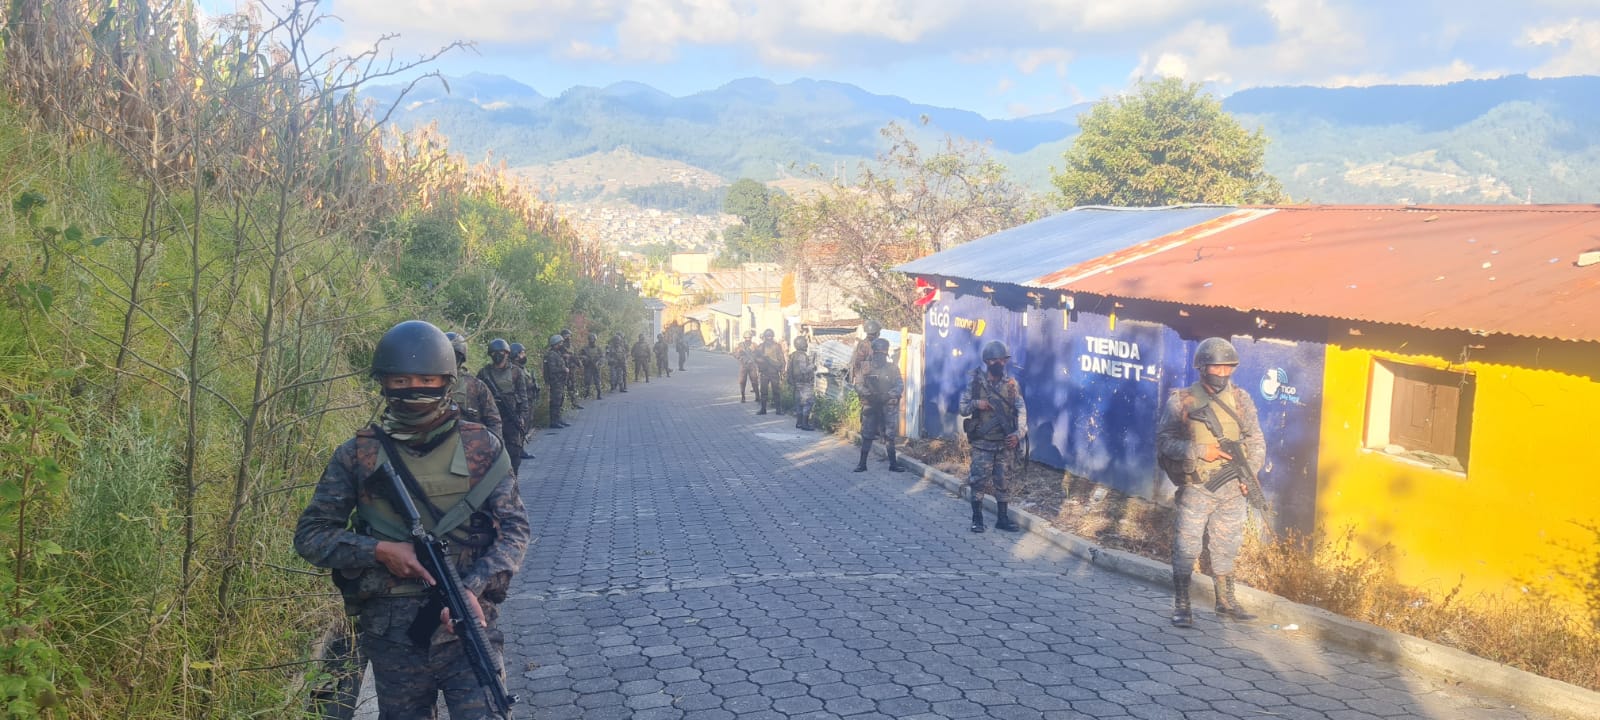 Alrededor de 2 mil elementos del Ejército y la Policía están destacados en Nahualá y Santa Catarina Ixtahuacán, Sololá. (Foto Prensa Libre: Ejército)